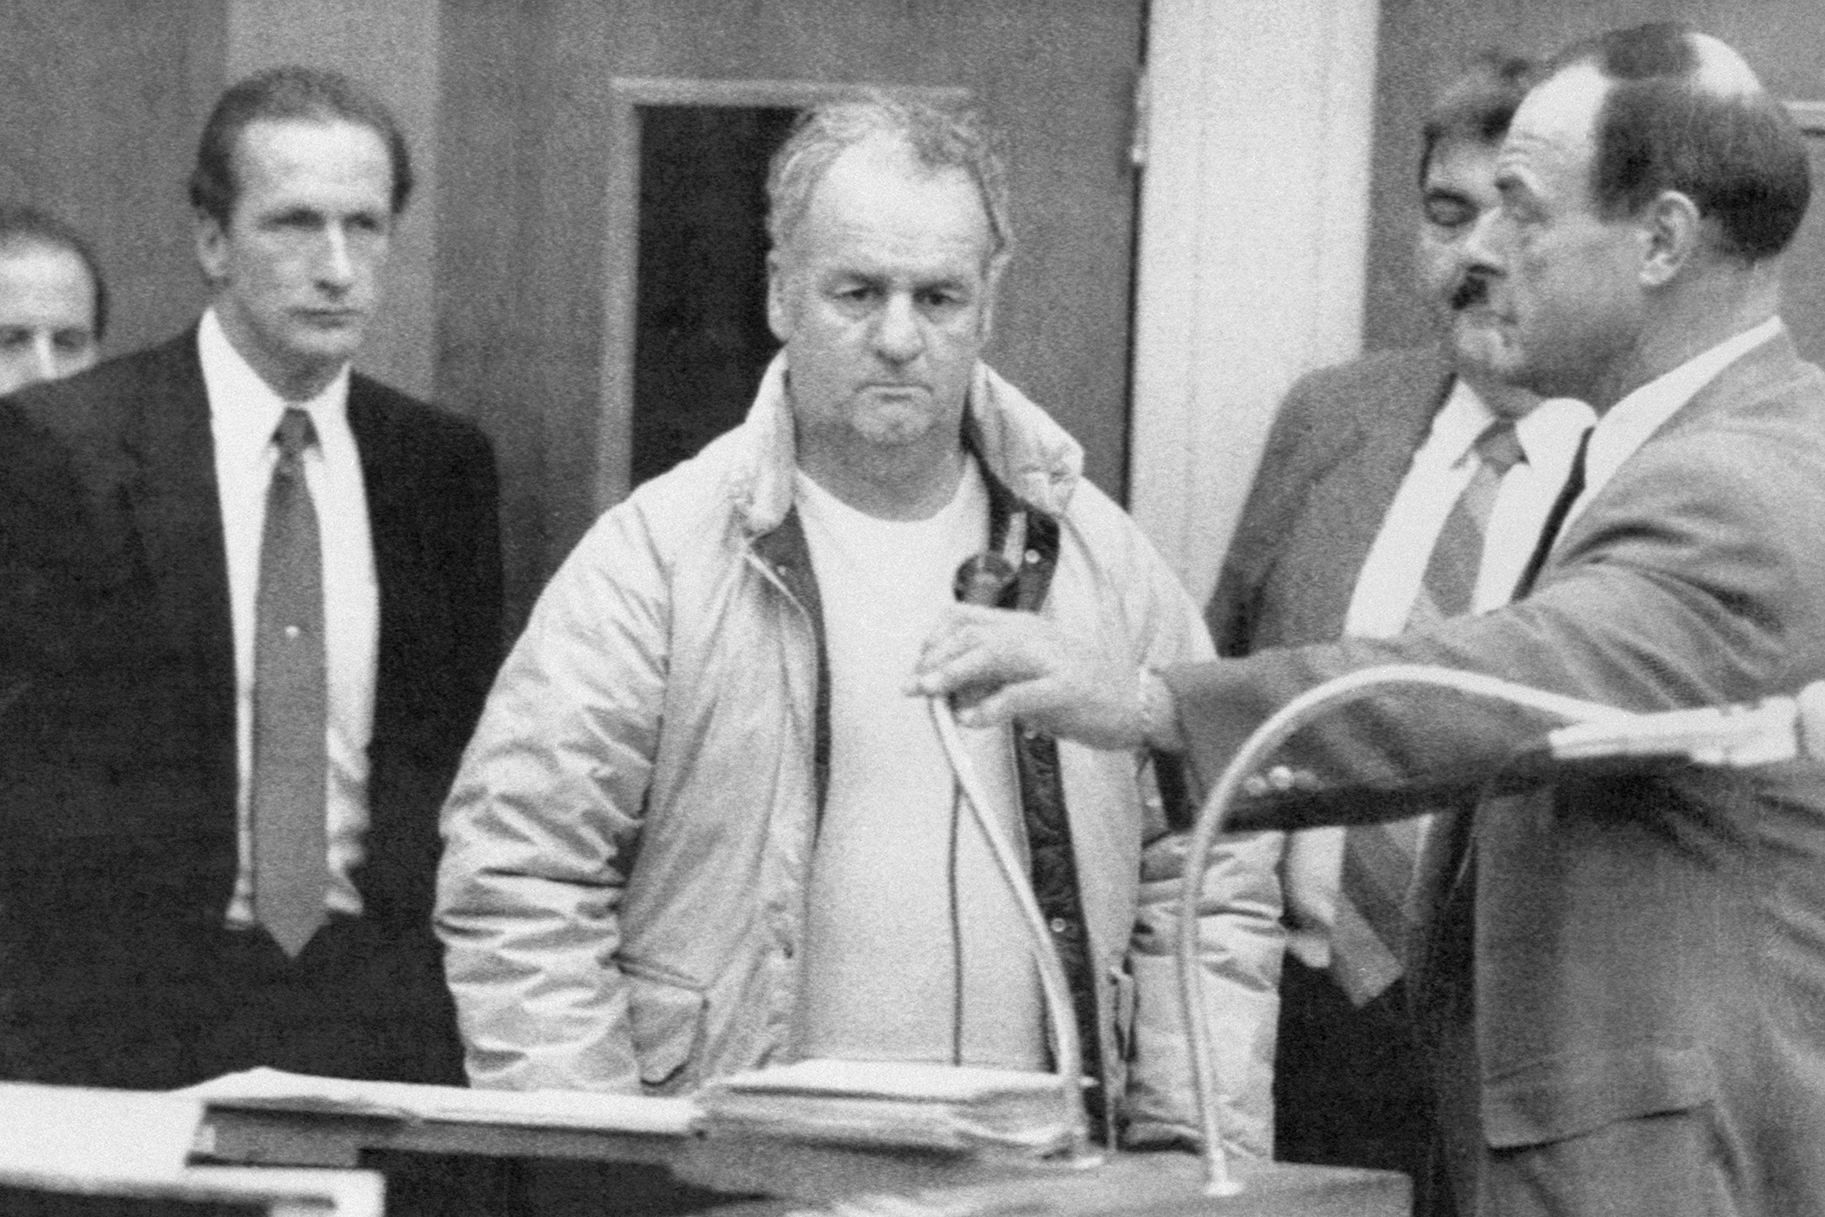 'Moral bi trpeti': Zakaj je bil serijski morilec Arthur Shawcross pogojno odpuščen pred umorom?